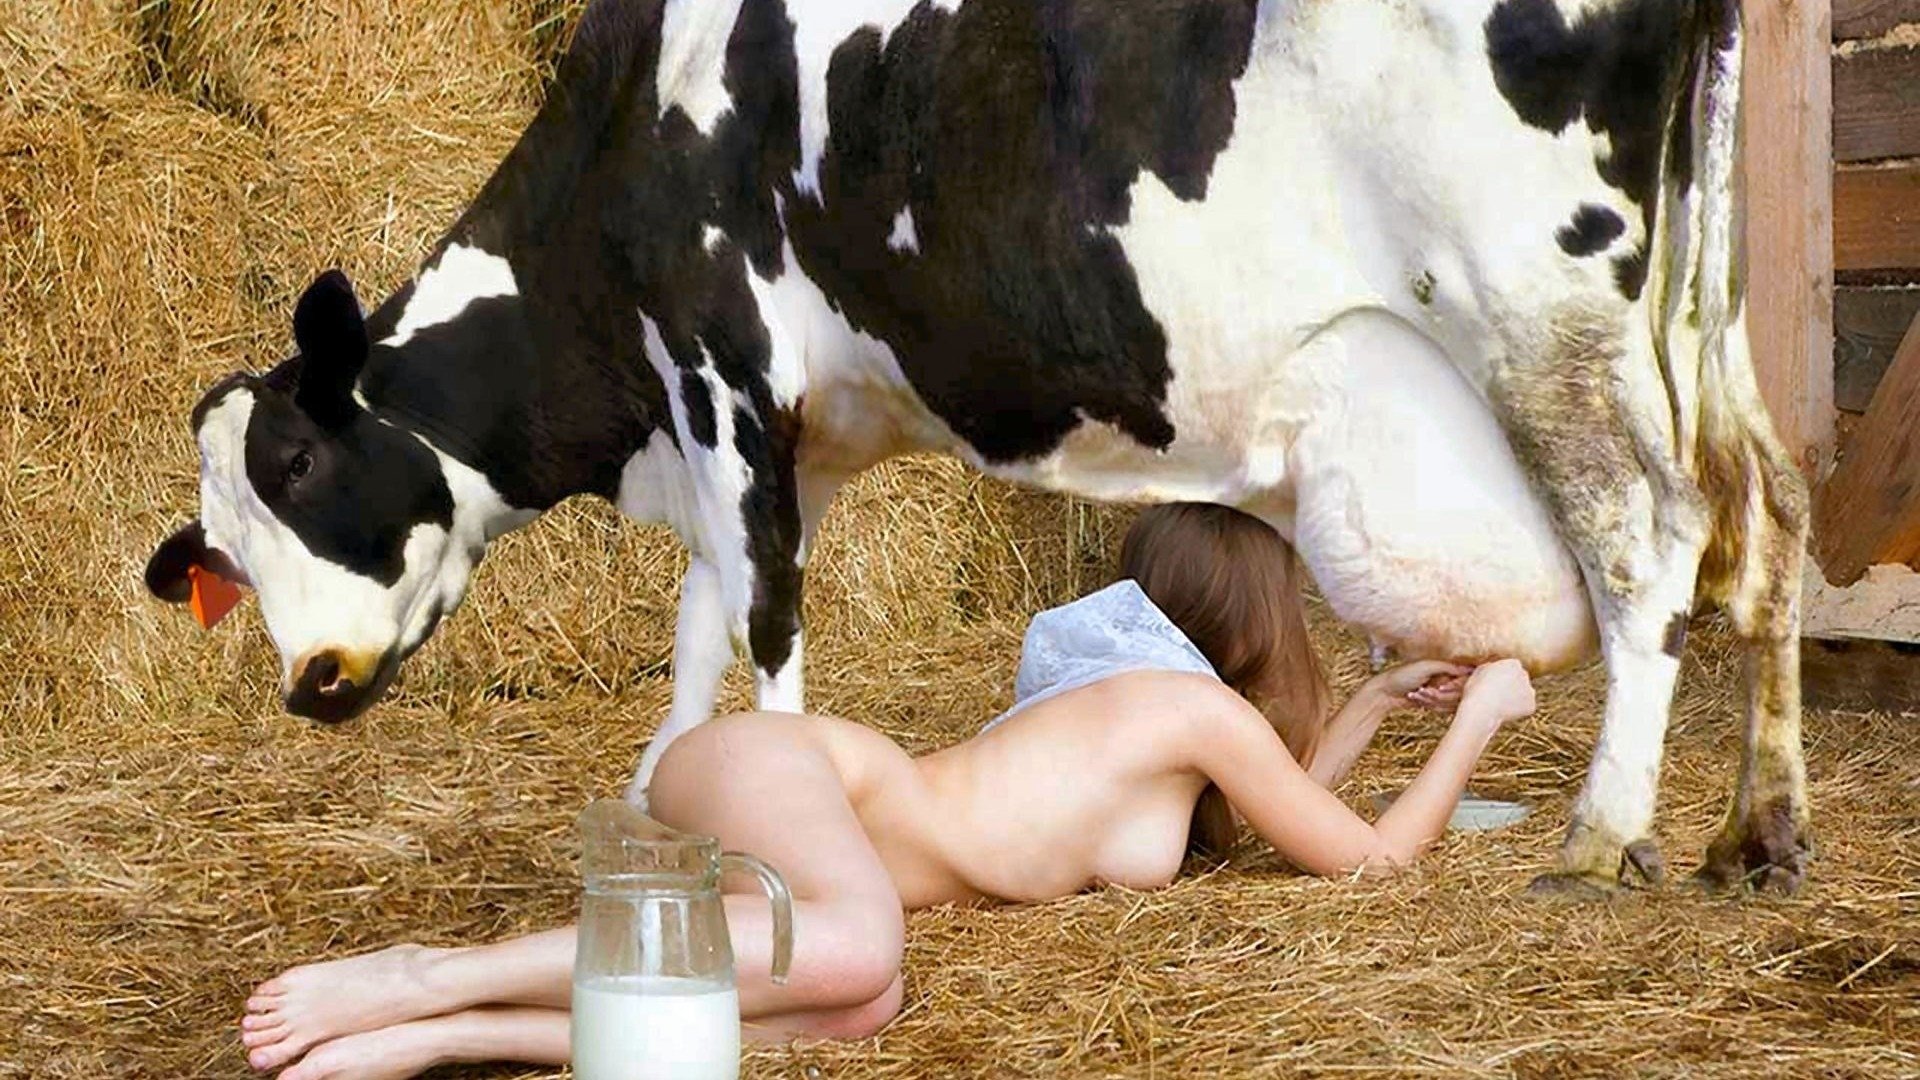 дойки как у коровы порно фото 21